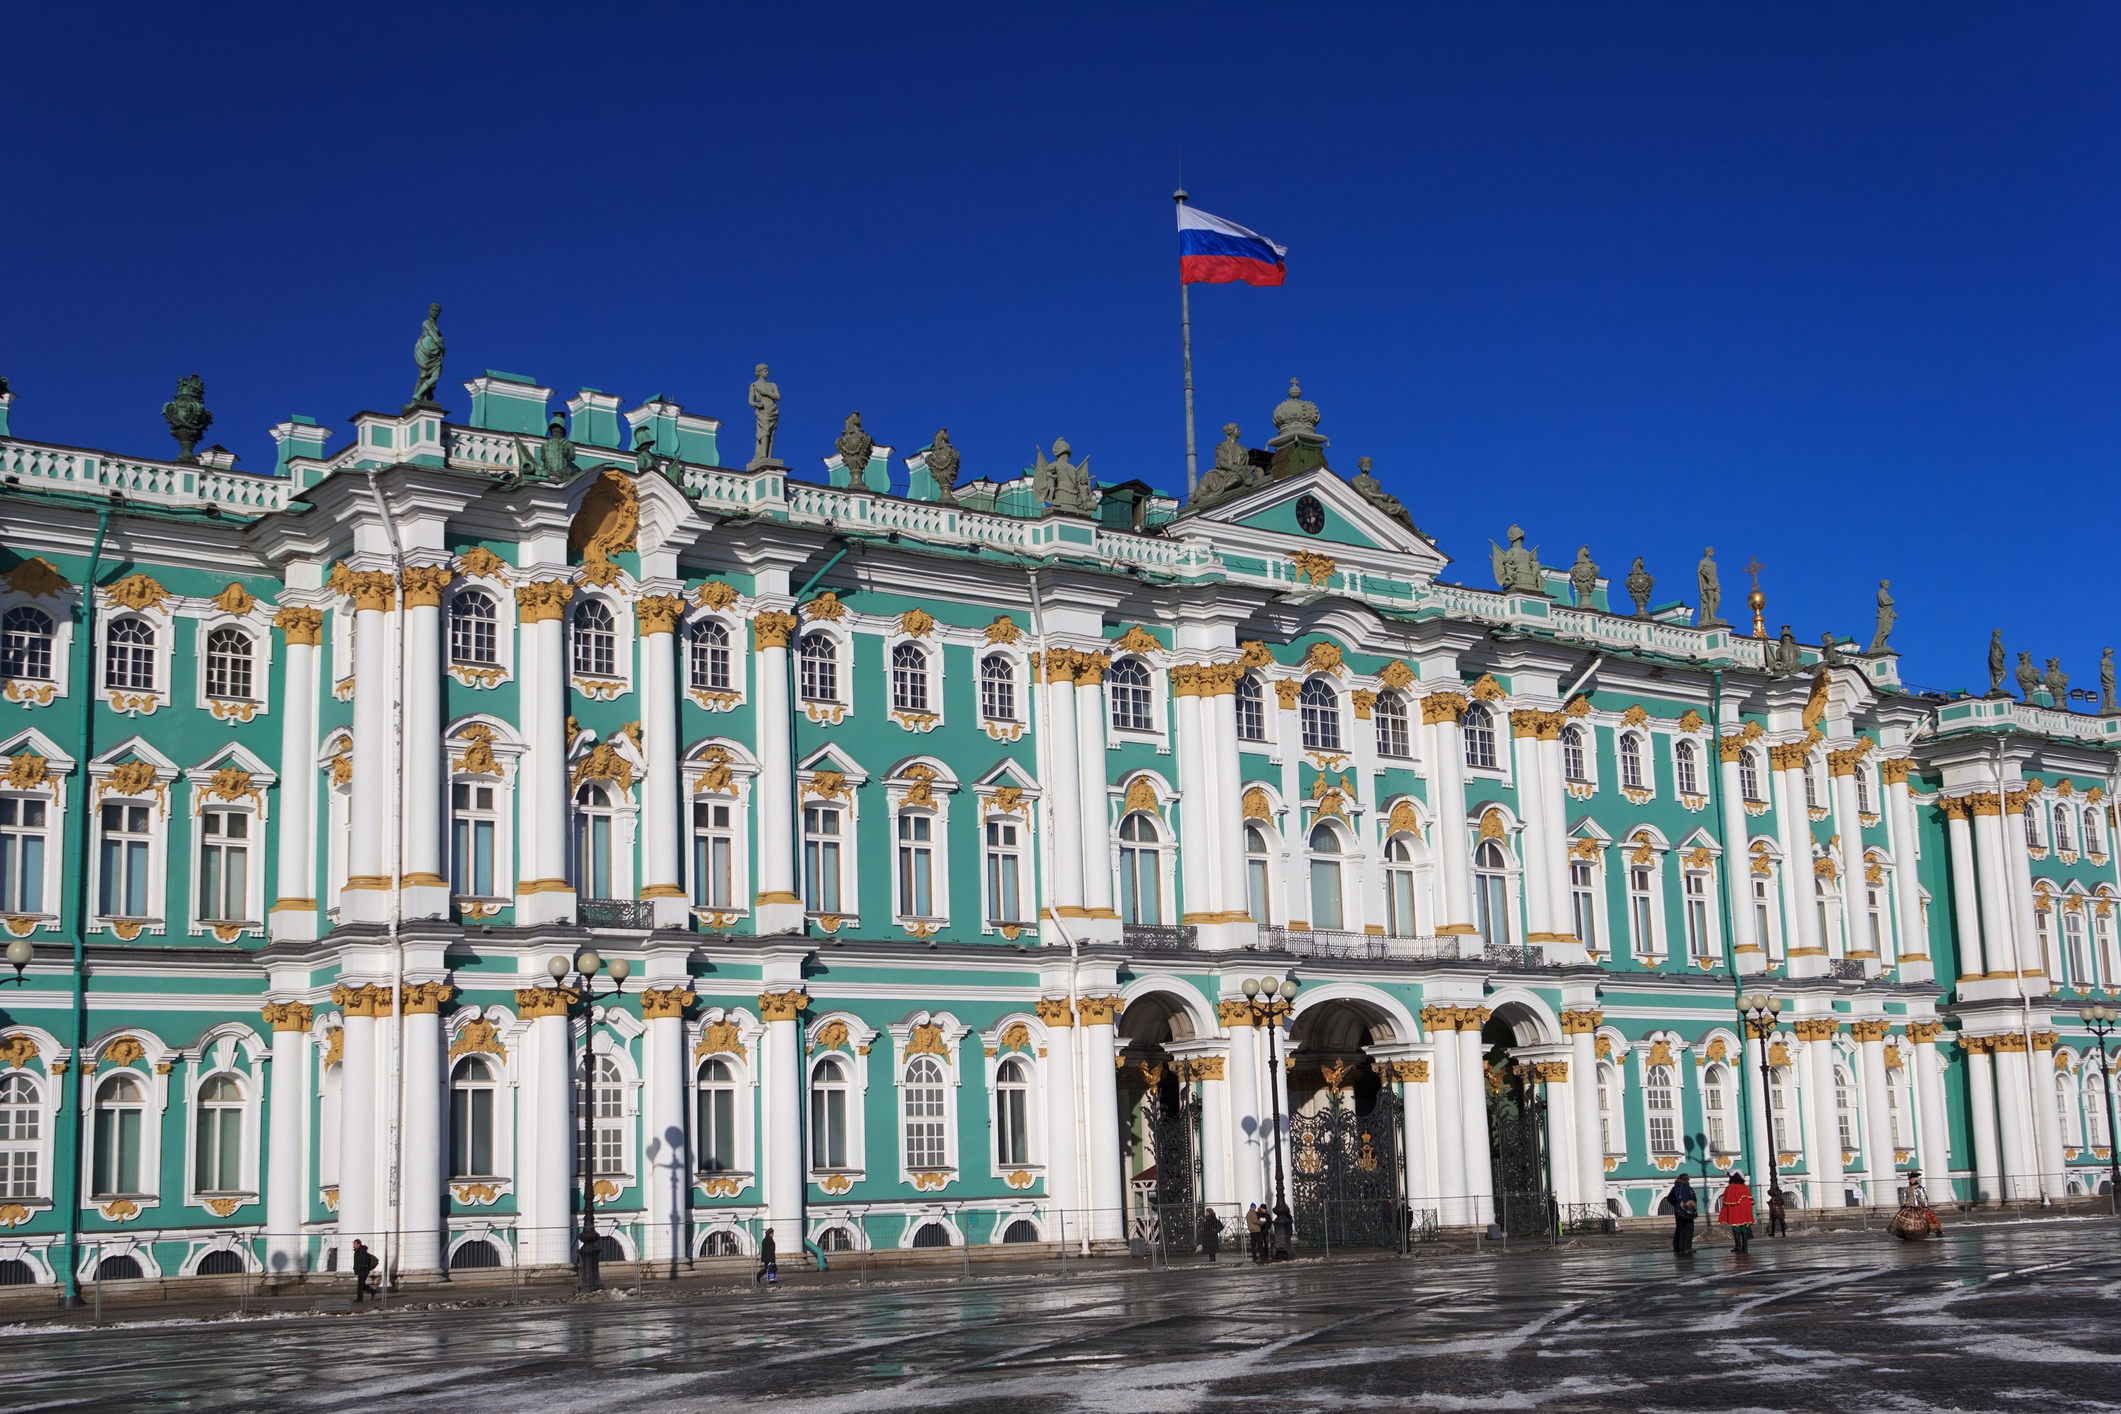 Ермитажът е най-големият руски музей, който се намира в Санкт Петербург. Интересен факт е, че в него живеят около 70 котки, които пазят съкровищата му от гризачи.